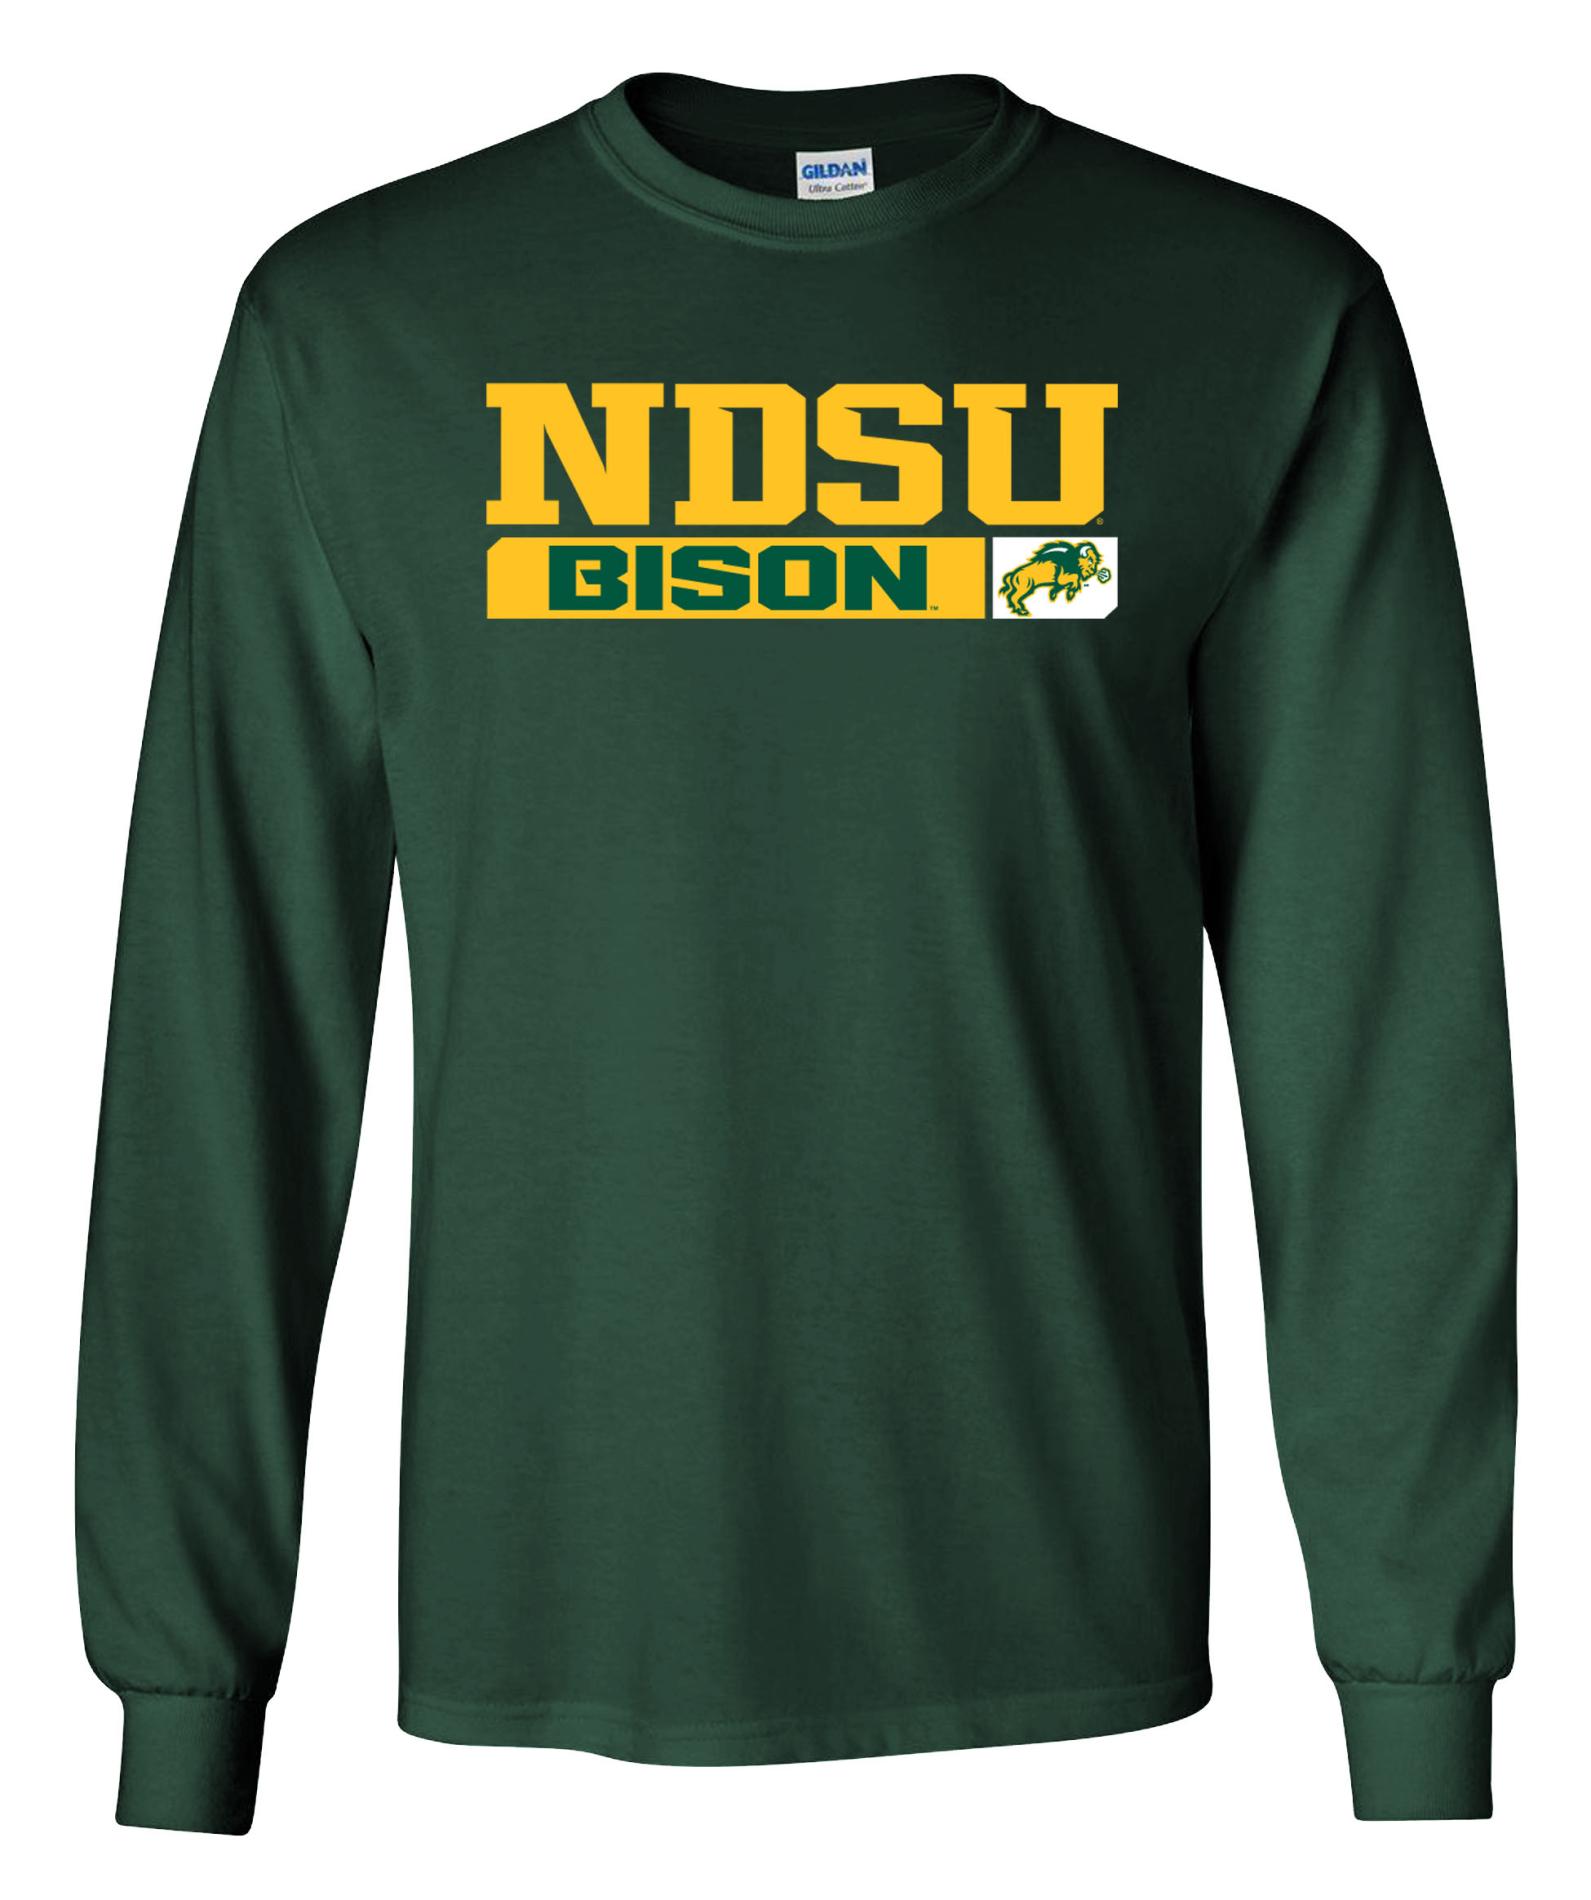 NCAA Men's Long-Sleeve T-Shirt - North Dakota State Bison